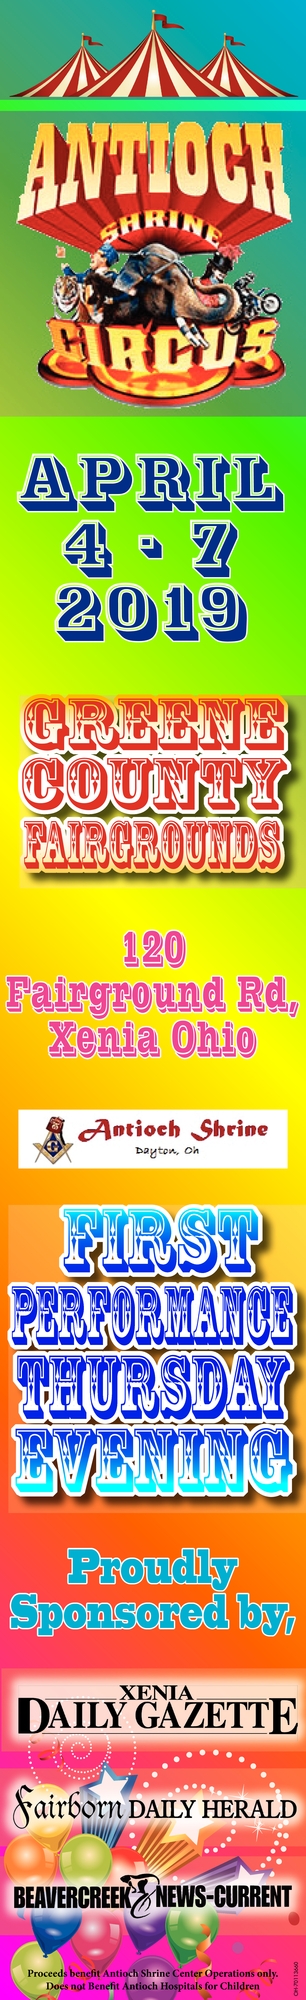 Greene County Fairgrounds Antioch Shrine Circus Xenia OH